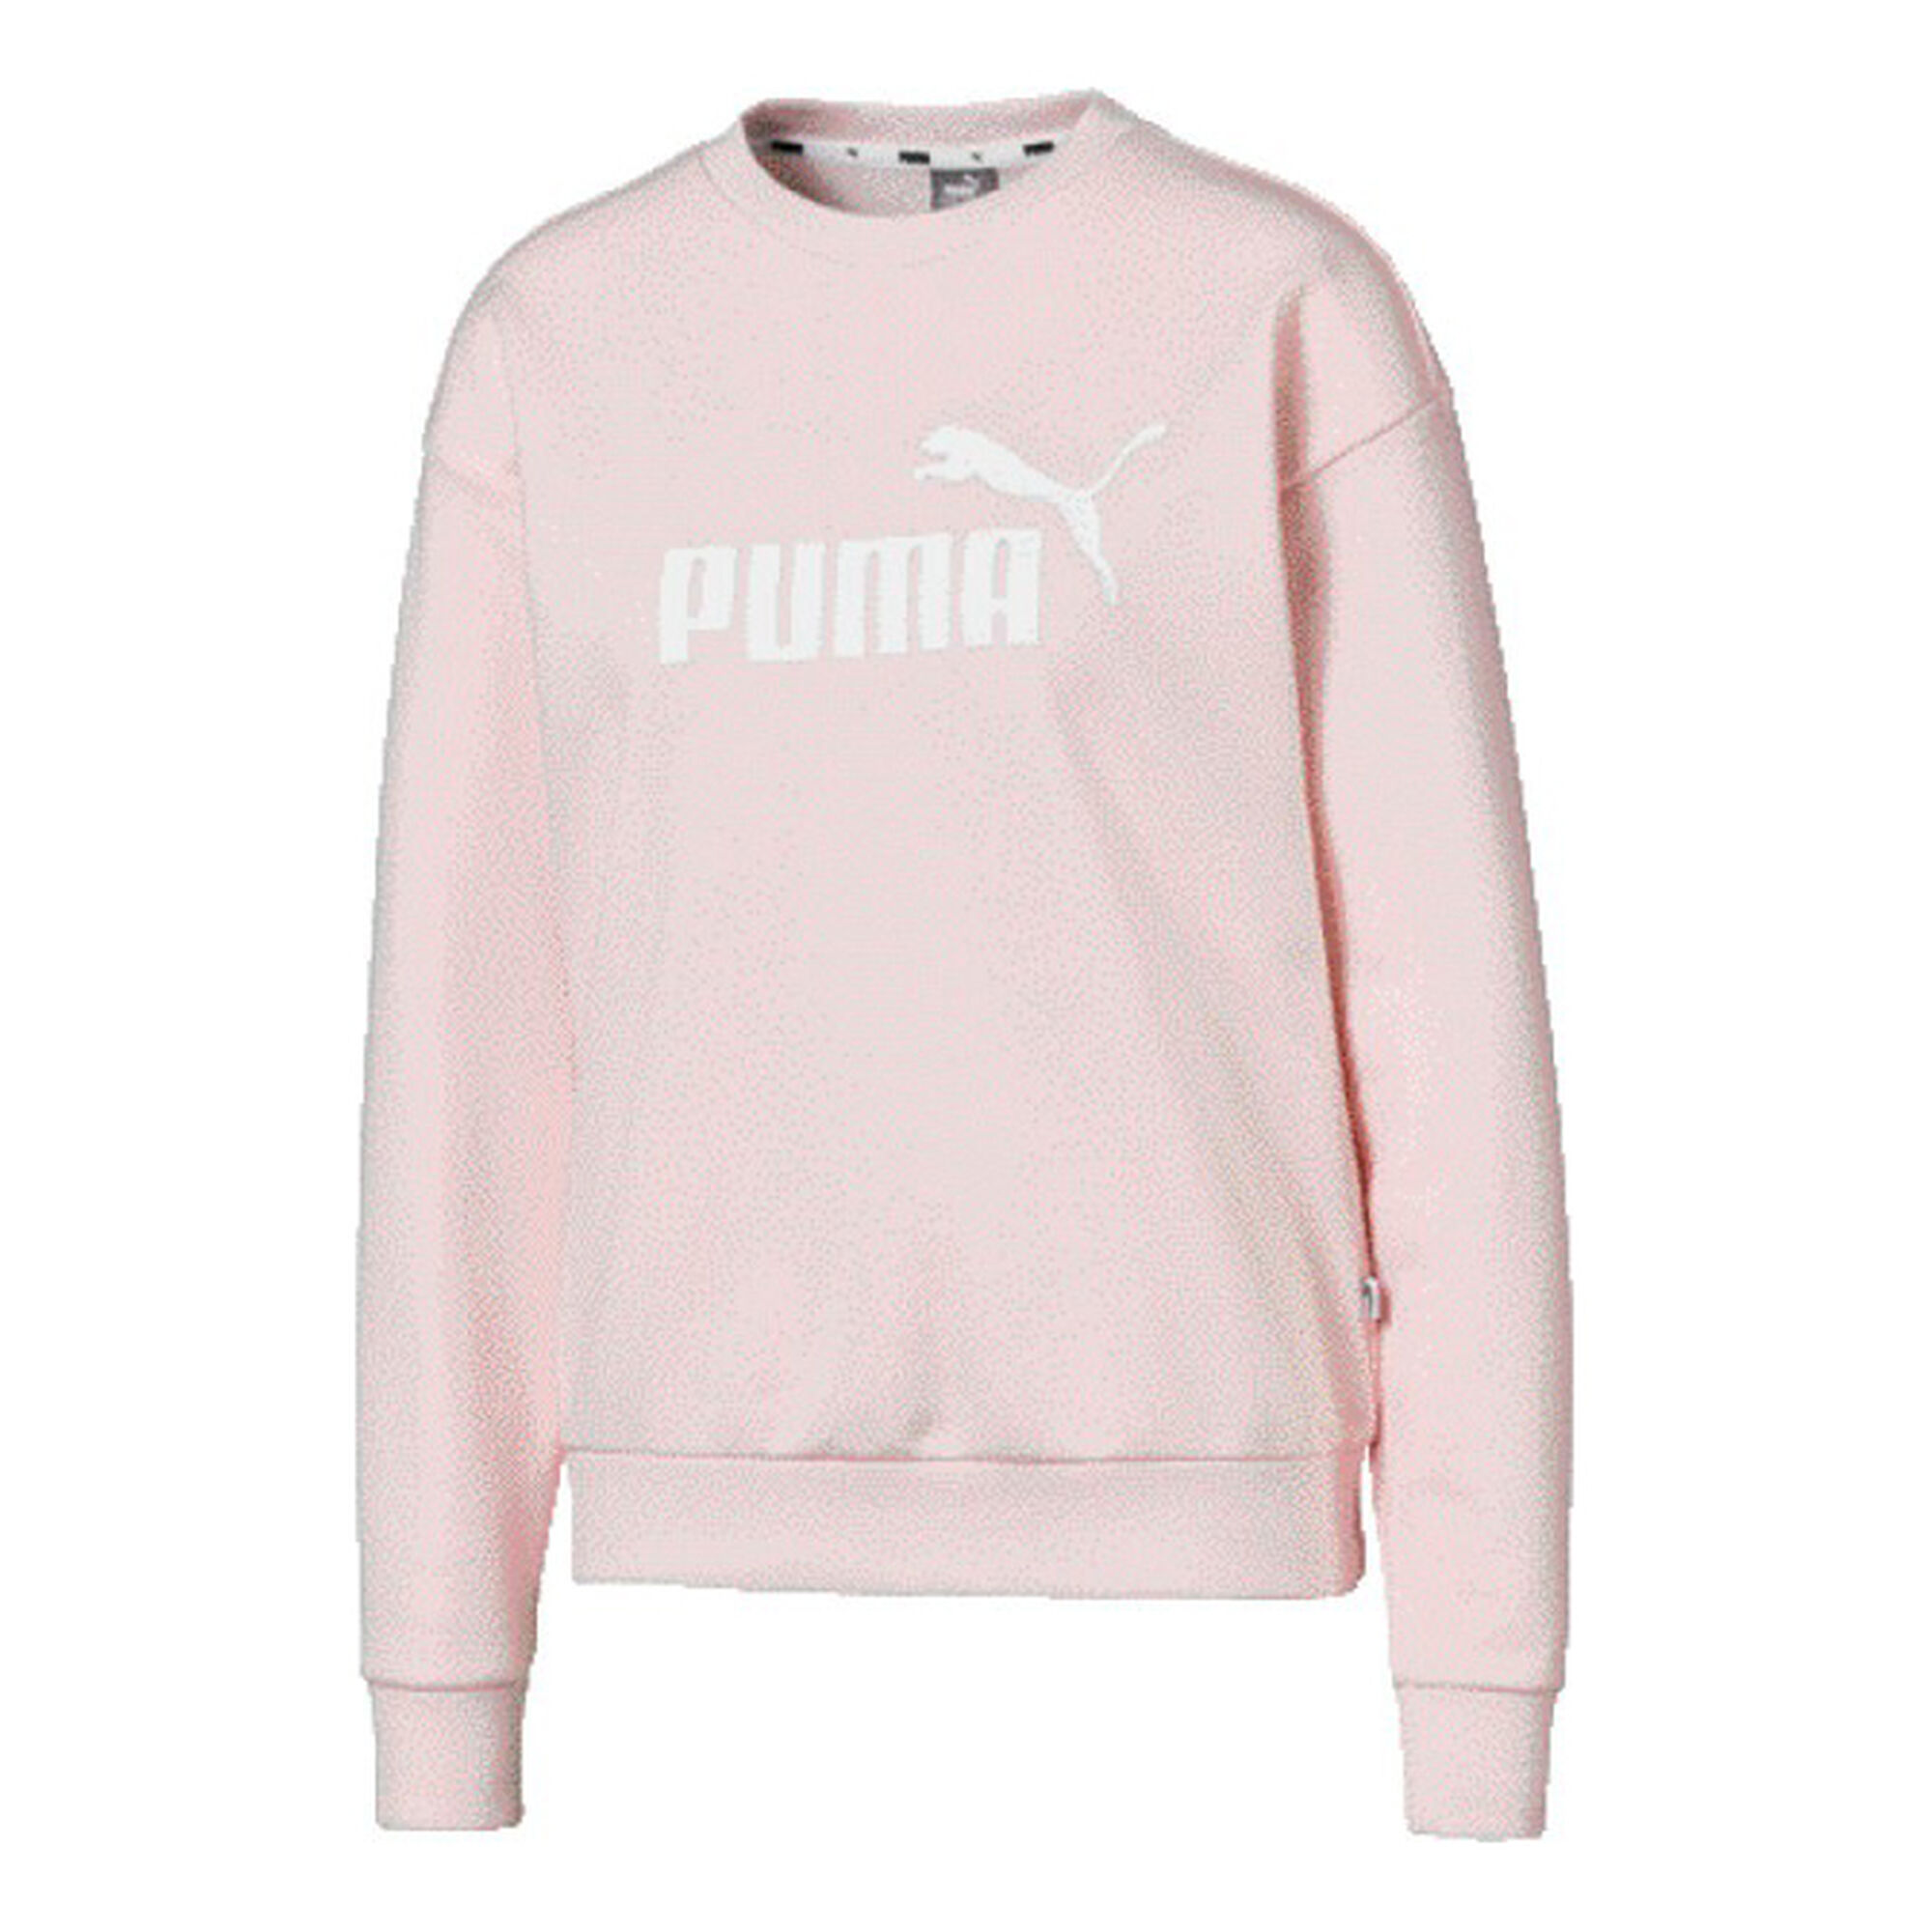 Buy Puma Essential Logo Crew Sweatshirt Women Pink, White online ...